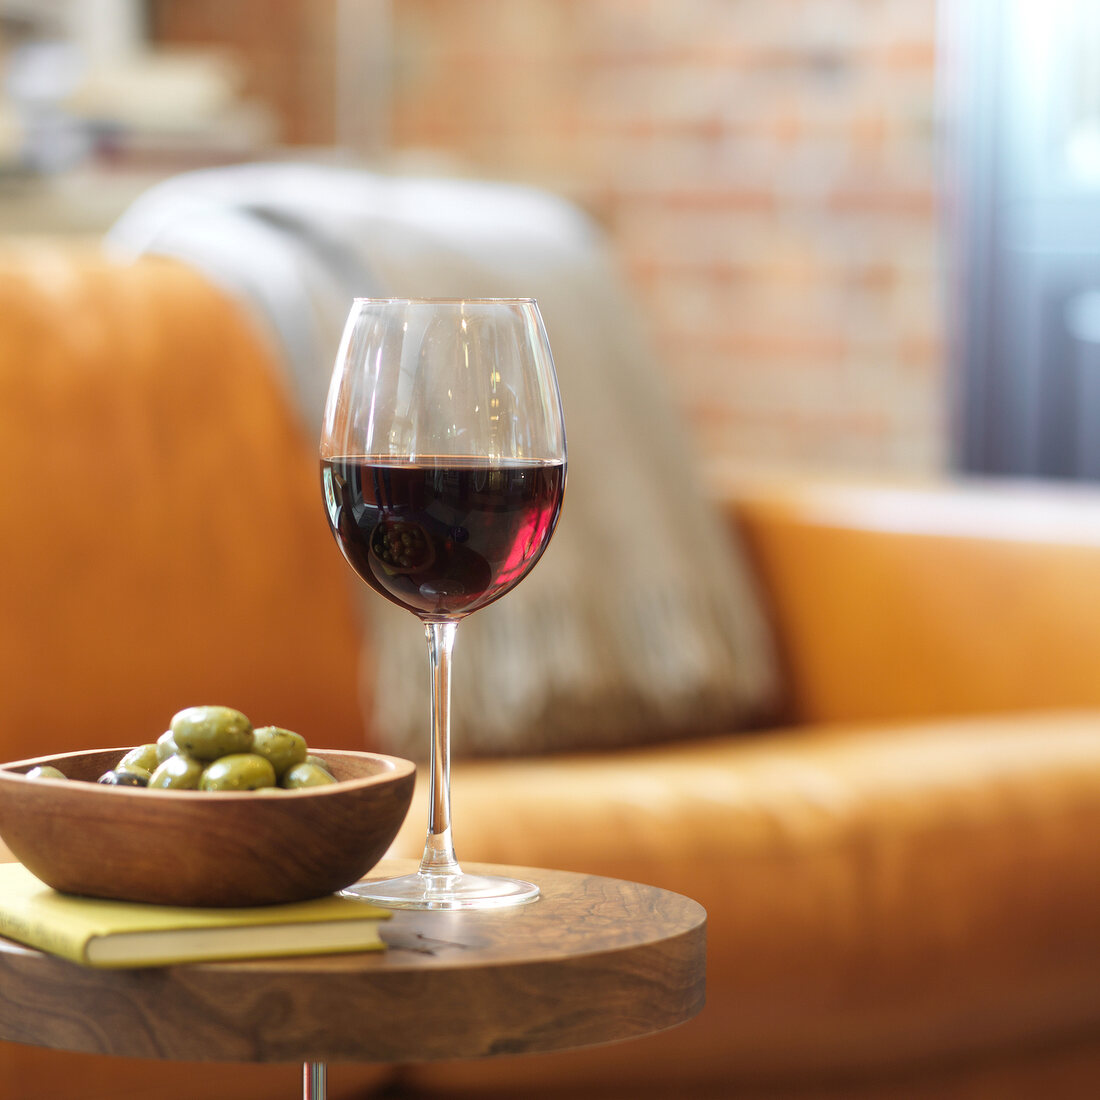 Glas mit Rotwein neben Schale mit grünen Oliven